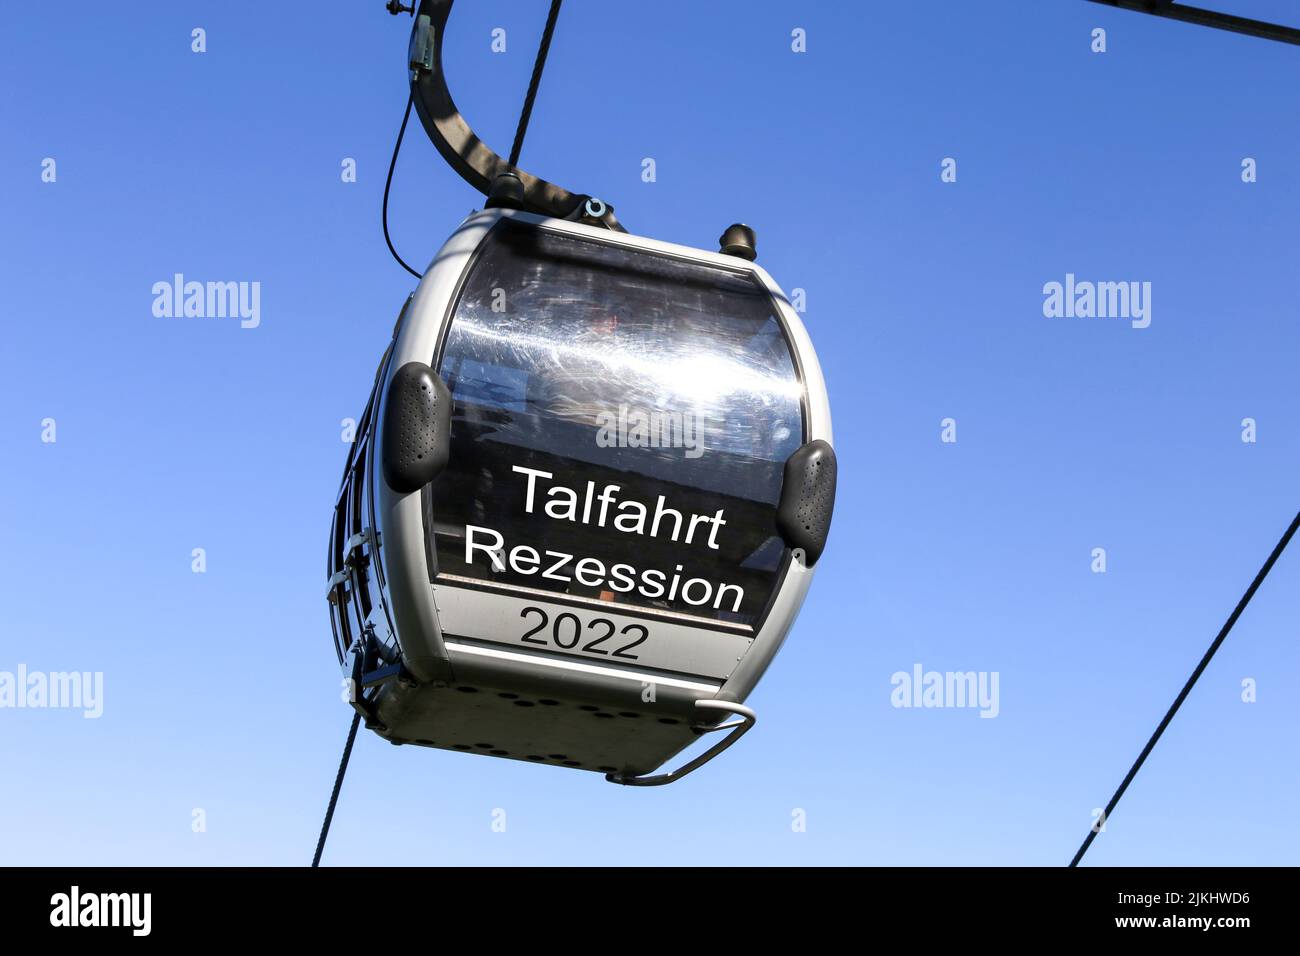 Symbolbild Rezession: Gondel mit der Aufschrift Talfahrt, Rezession vor blauem Himmel (composizione) Foto Stock